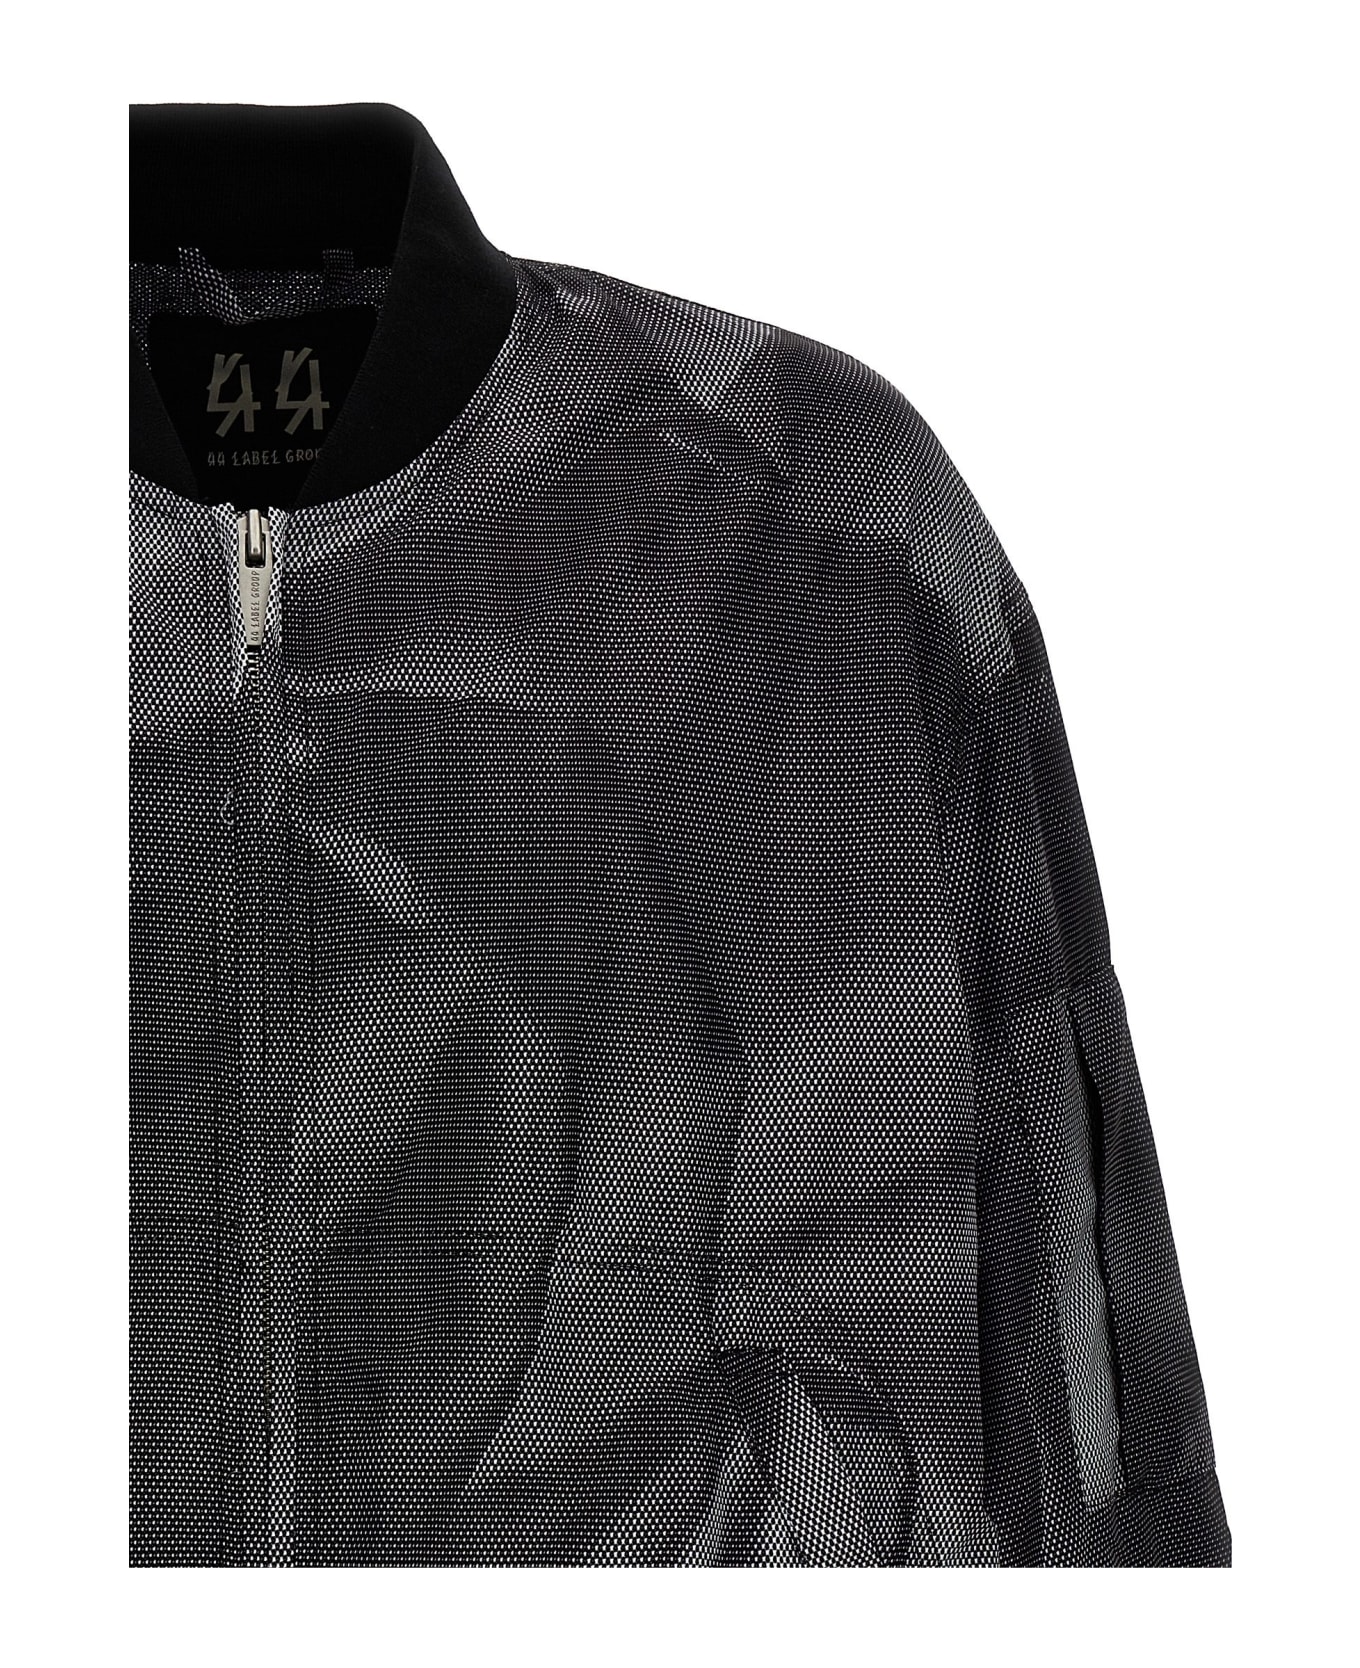 44 Label Group 'crinkle' Bomber Jacket Jacket - BLACK